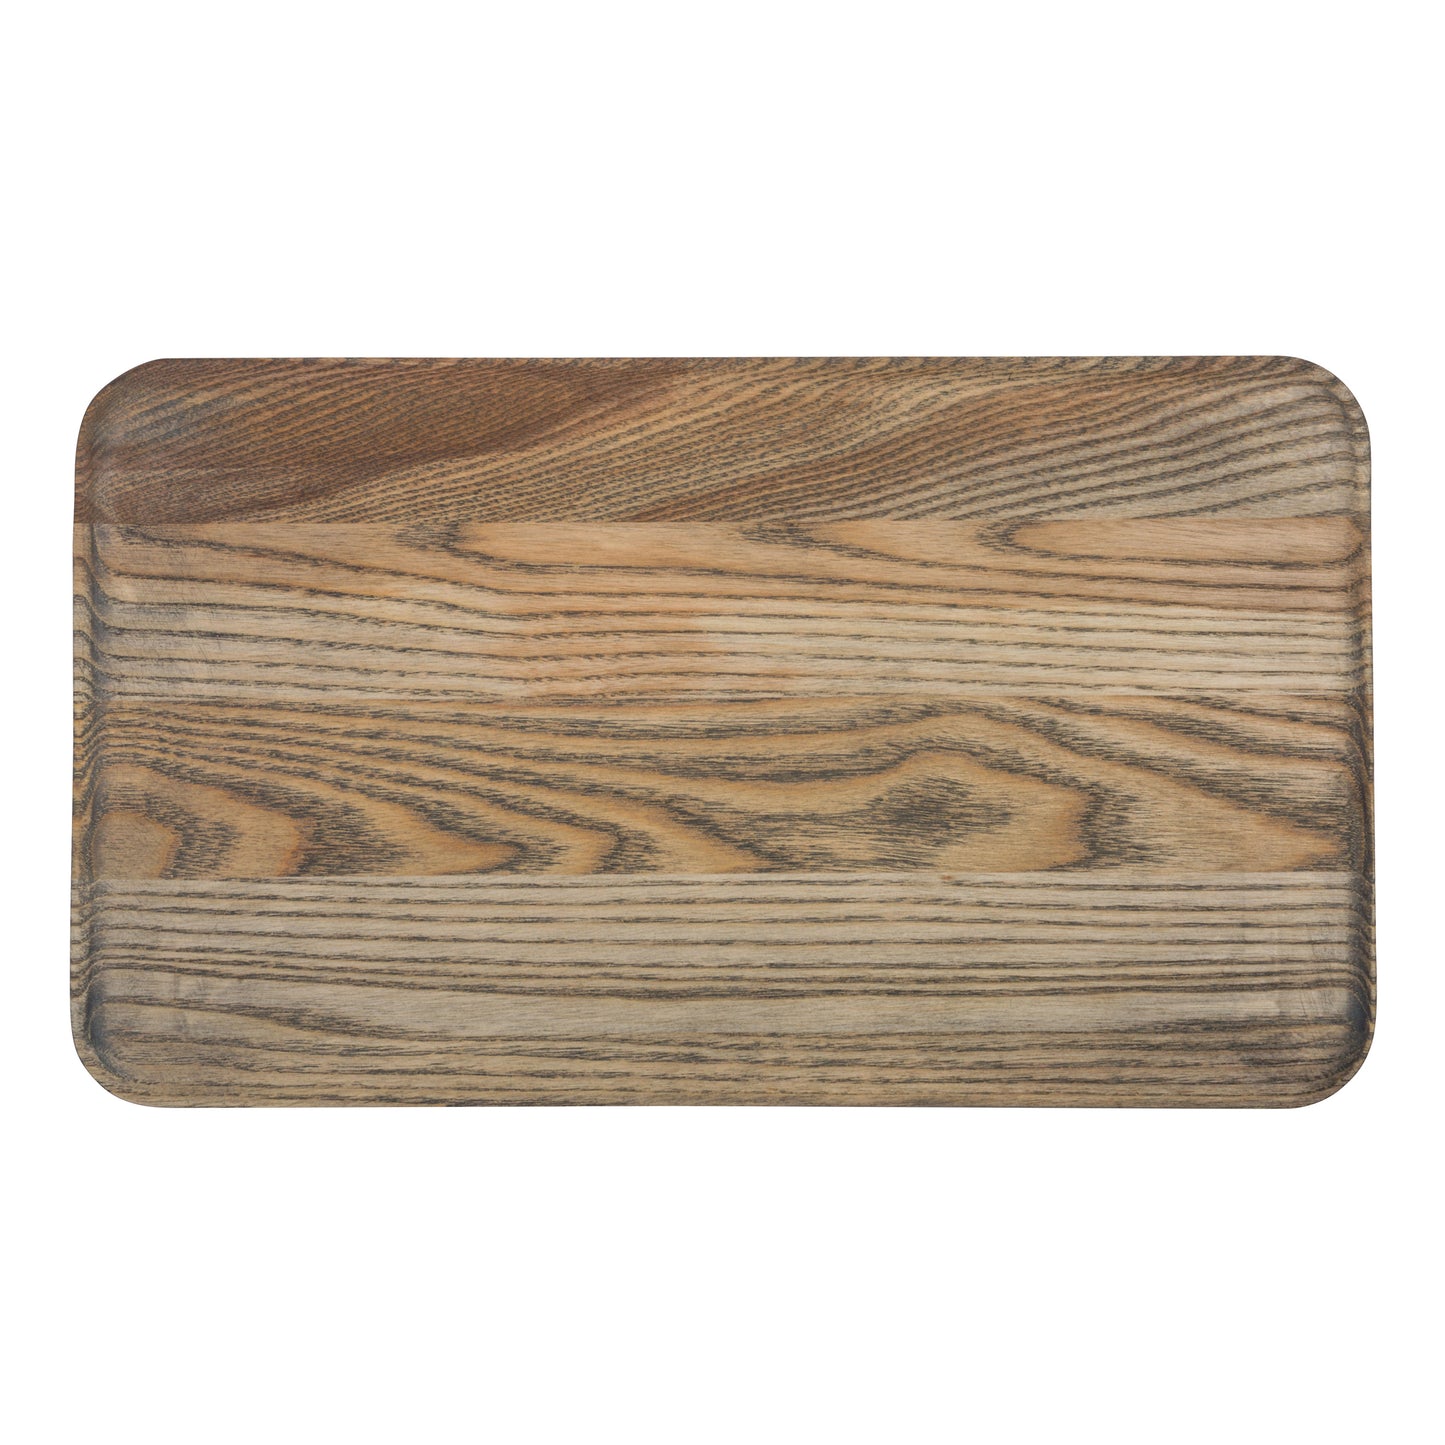 Driftwood Appetizer Plate-14" x 8"